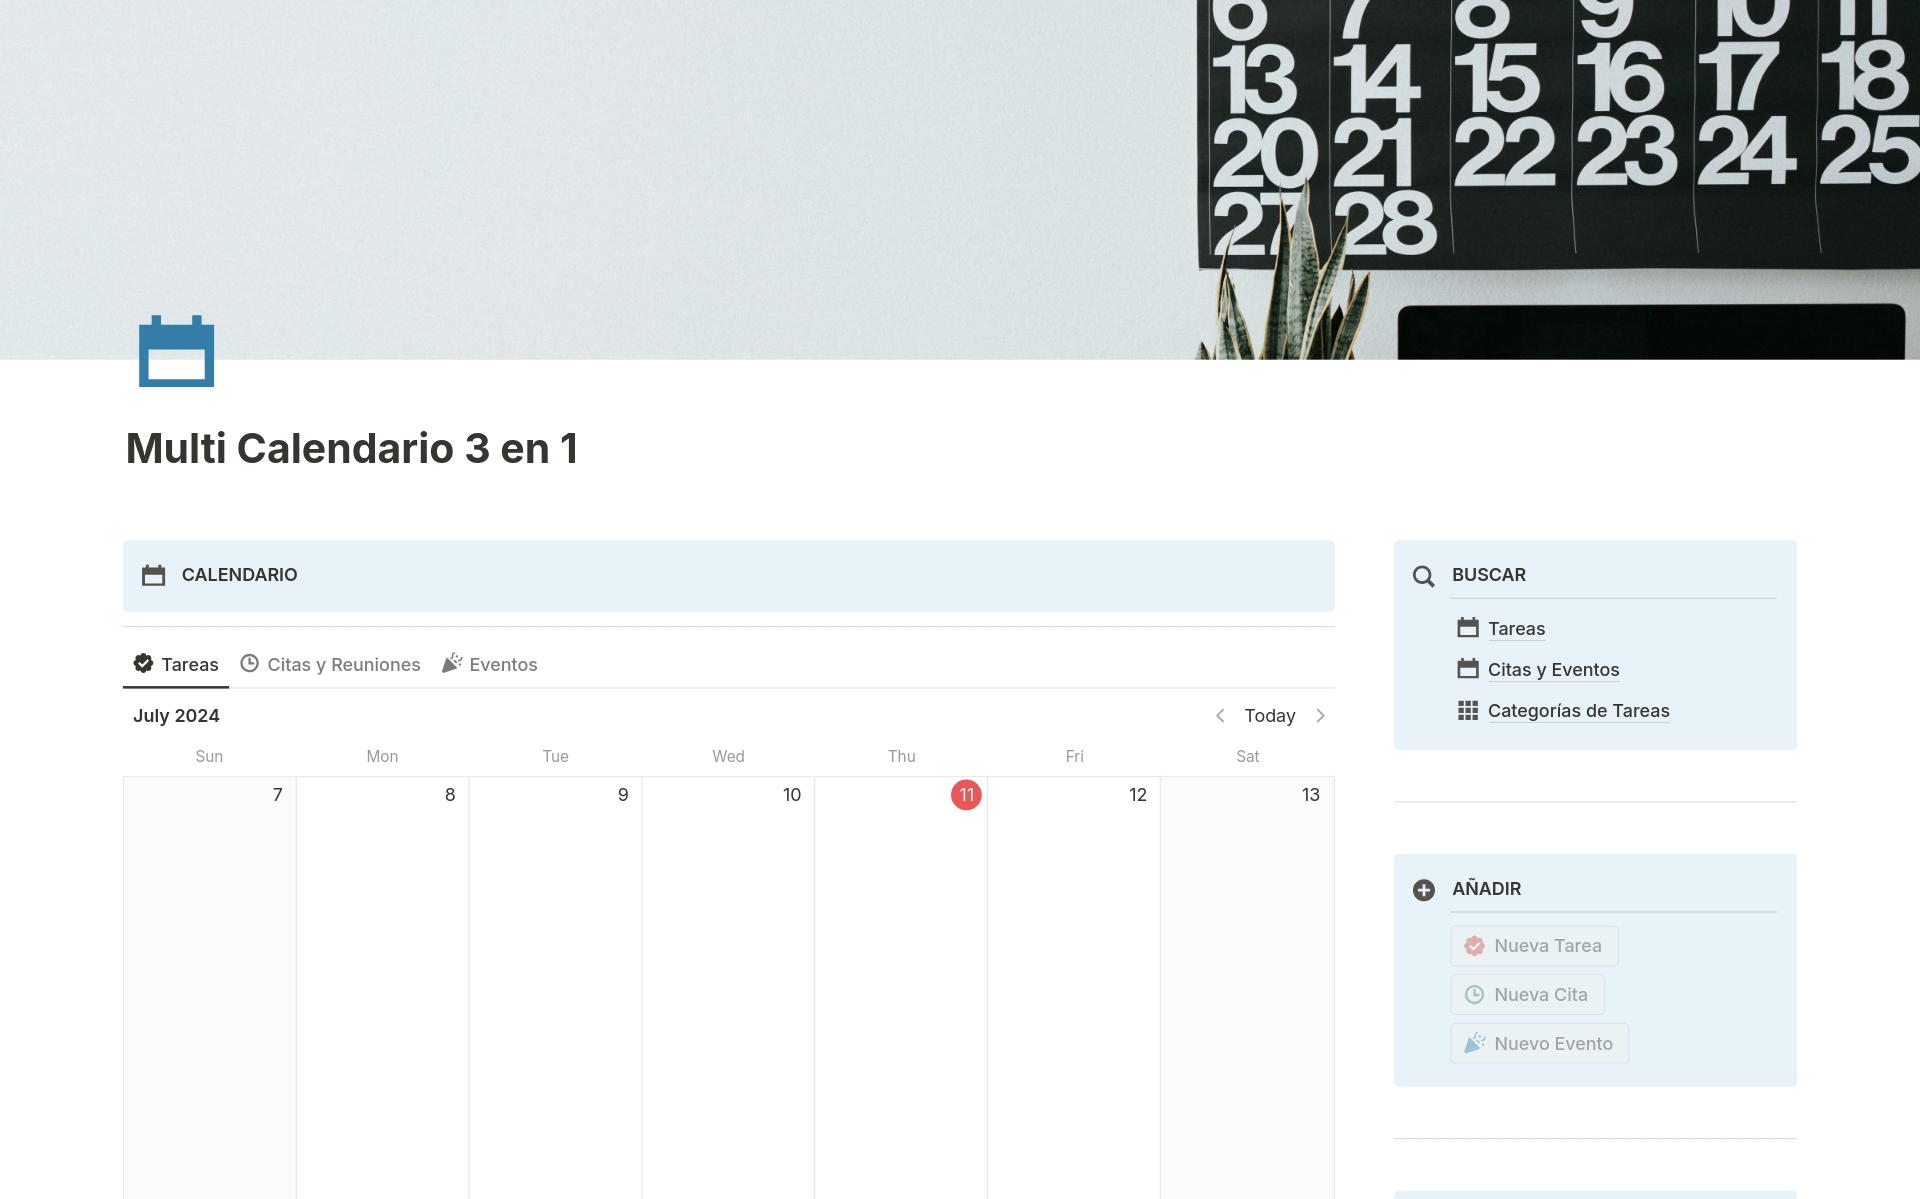 A template preview for Multi Calendario | Tareas, Citas y Eventos